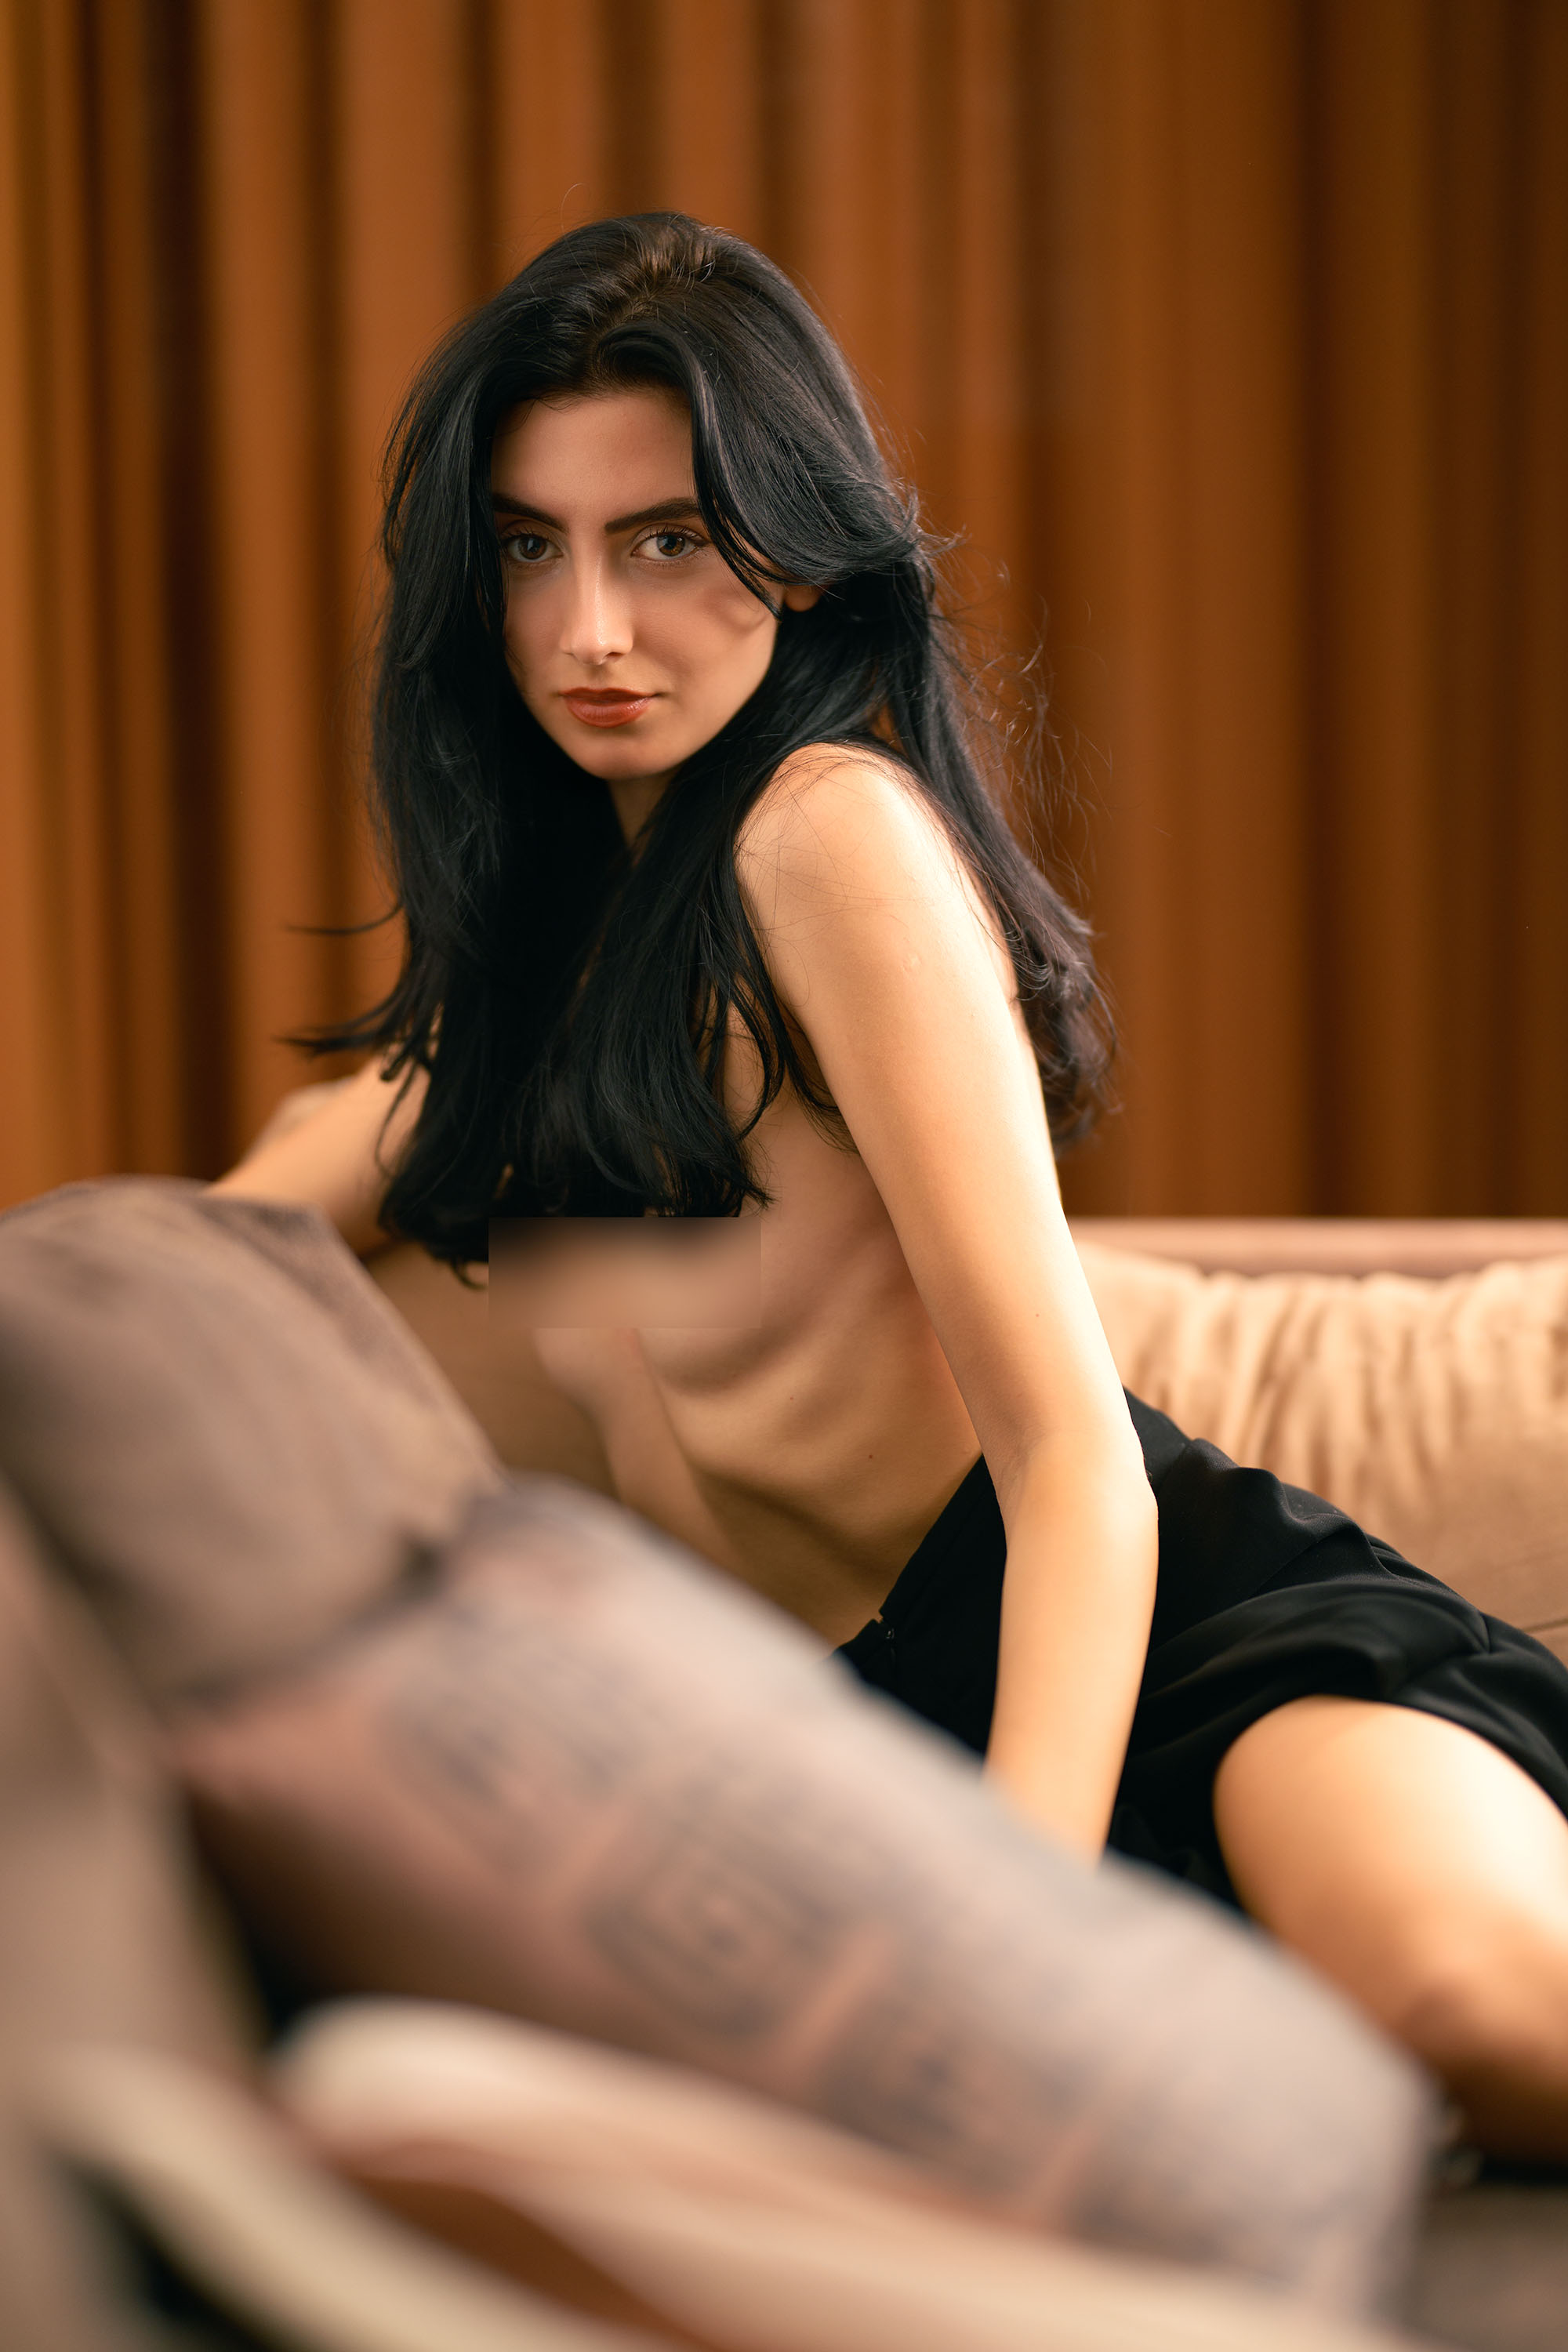 Anastasiia Kravchuk, model from Ukraine at a boudoir photoshoot